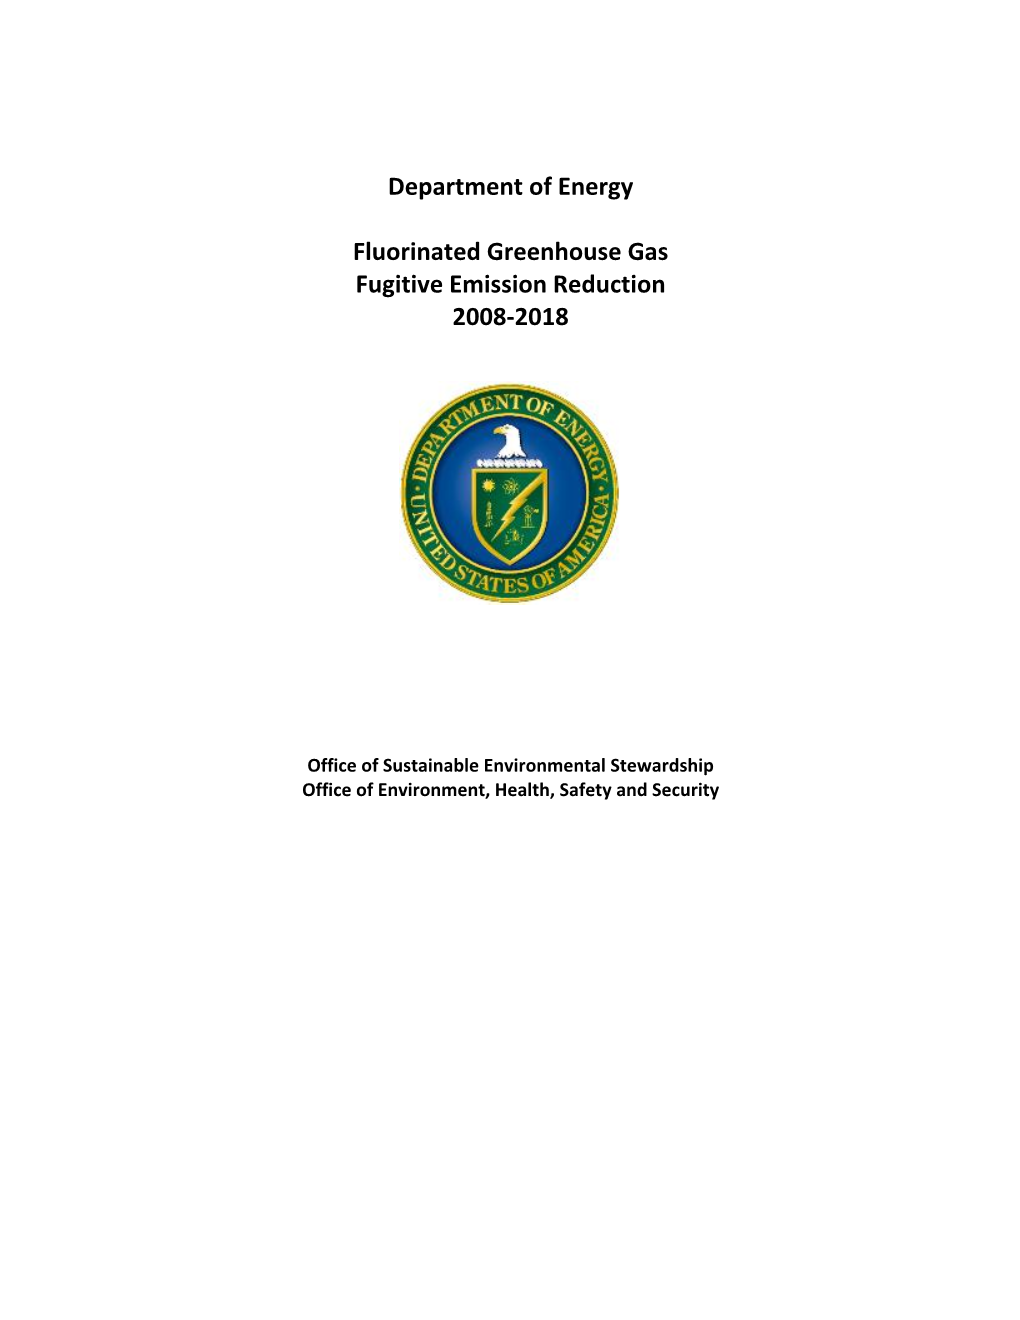 Fluorinated Greenhouse Gas Fugitive Emission Reduction 2008-2018